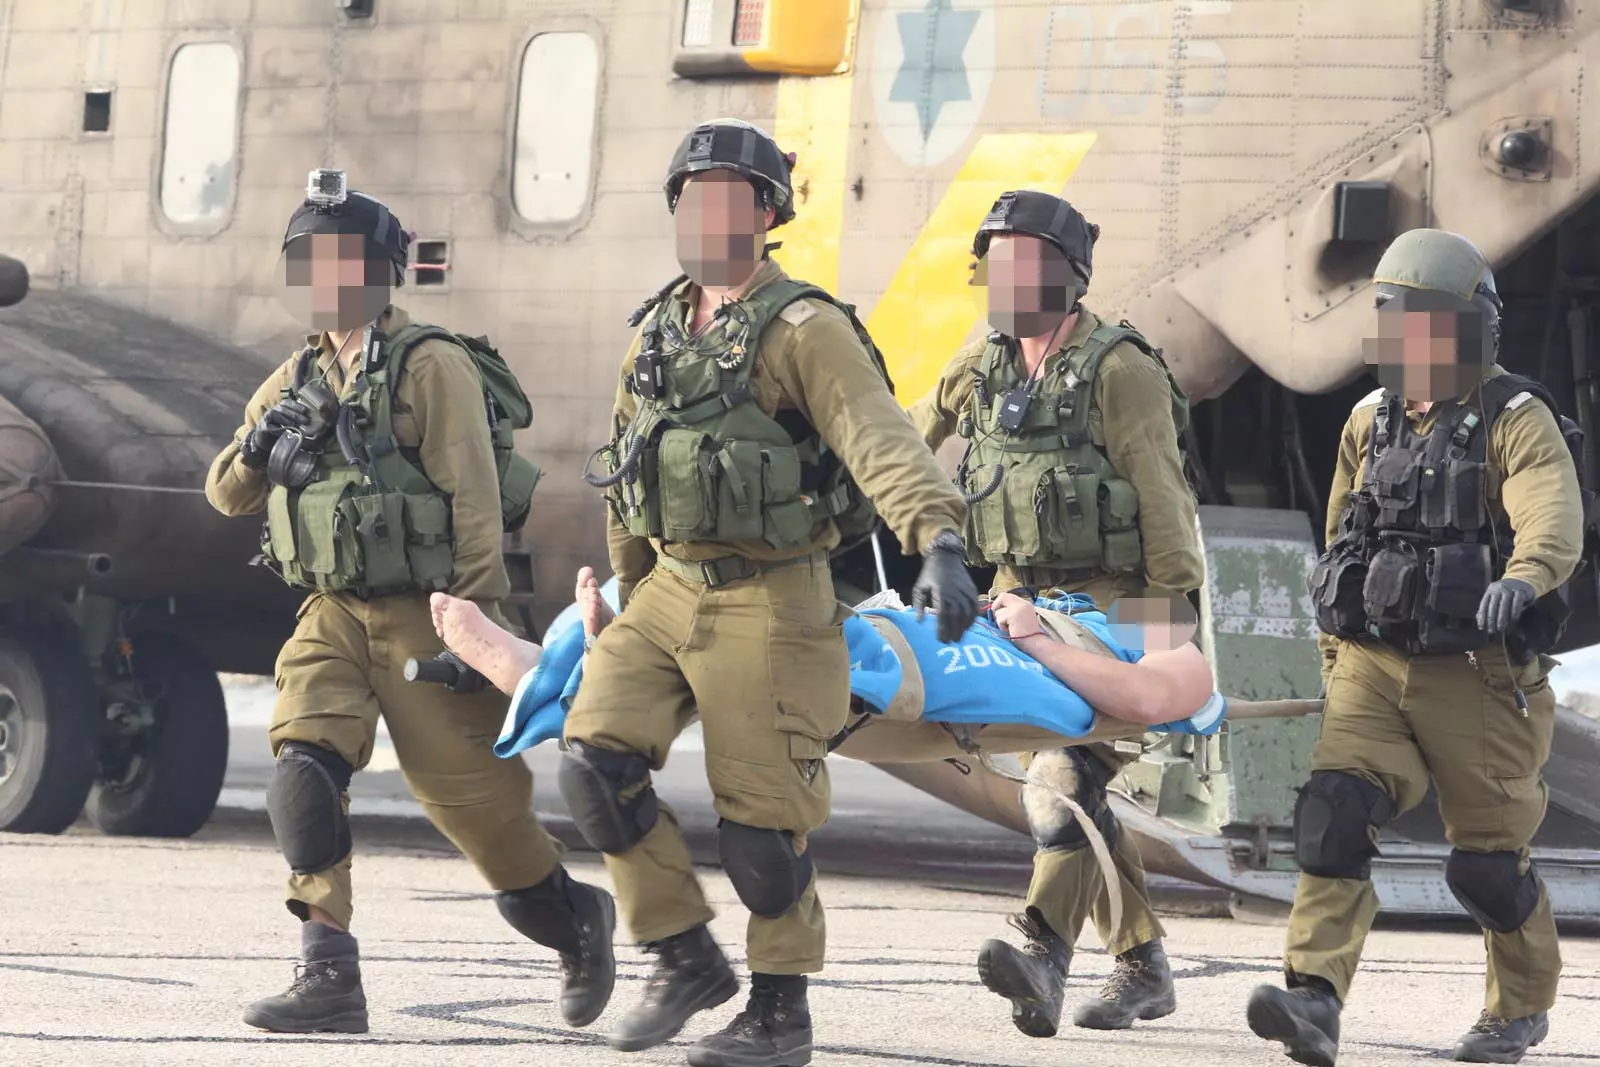 אחד החיילים שנפצעו בפיגוע ברמת הגולן מובל לטיפול בבית החולים רמב"ם